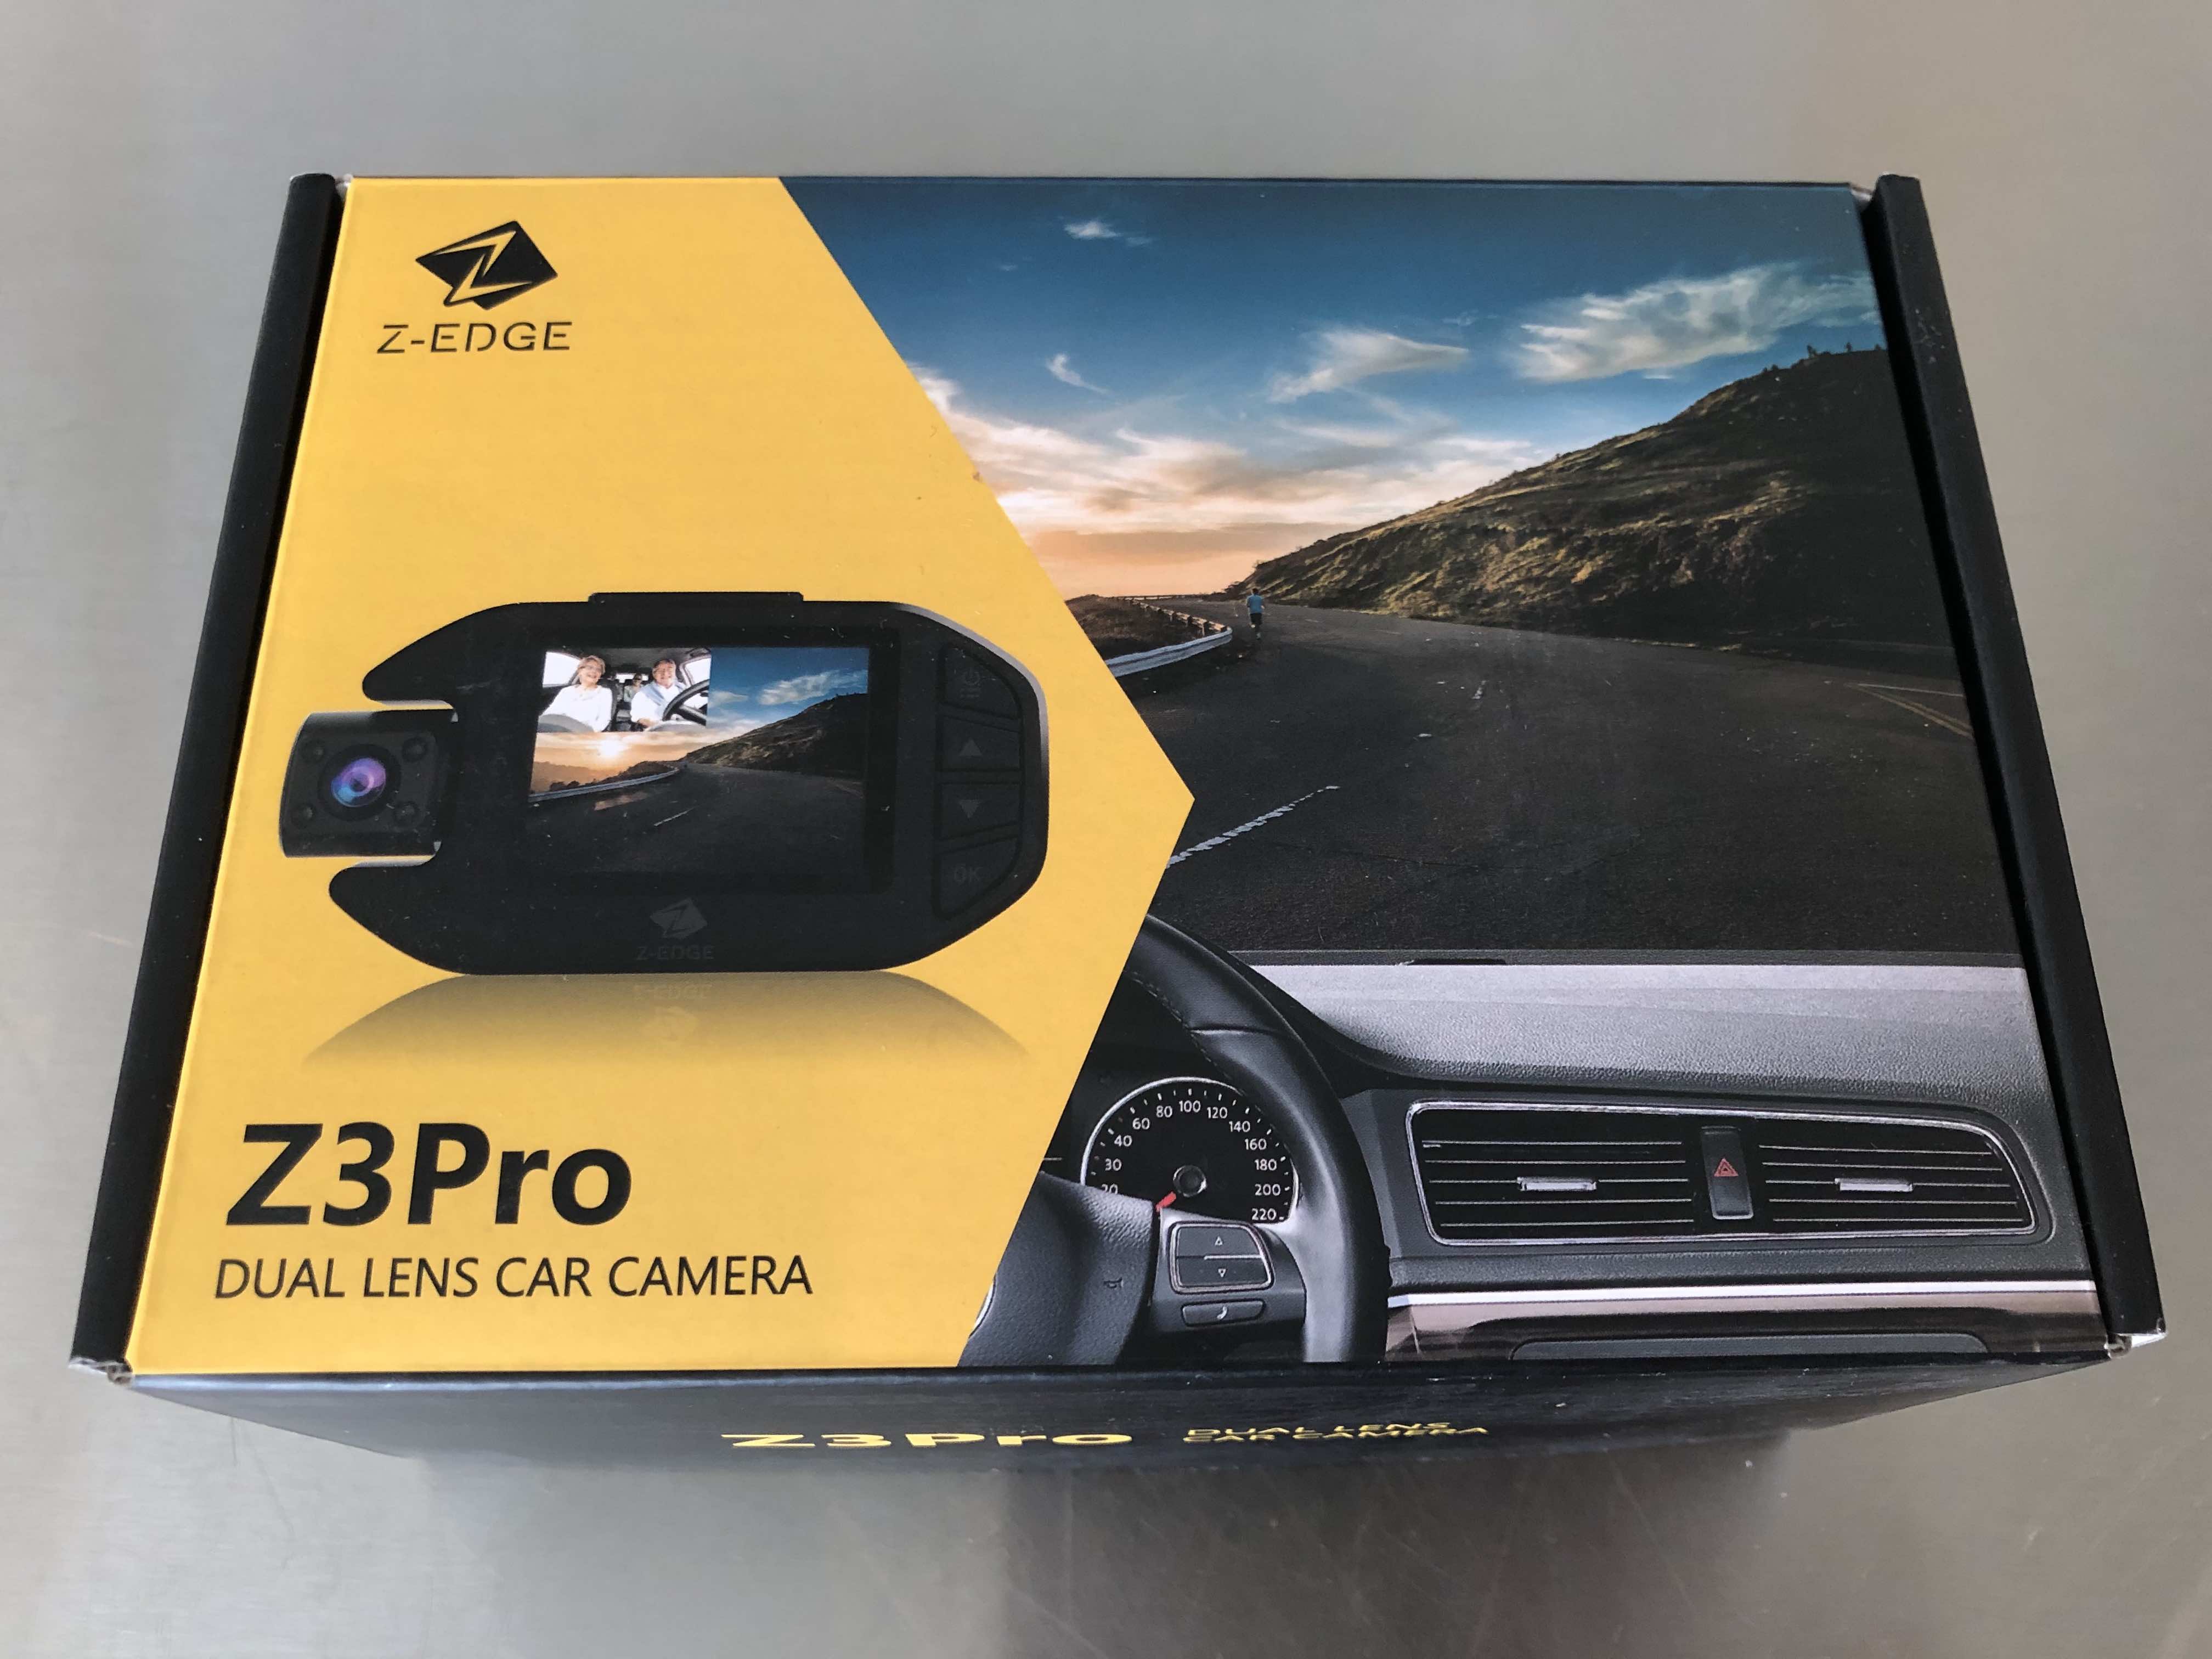 Z-Edge Z3Pro Dual Lens Car Camera review - The Gadgeteer